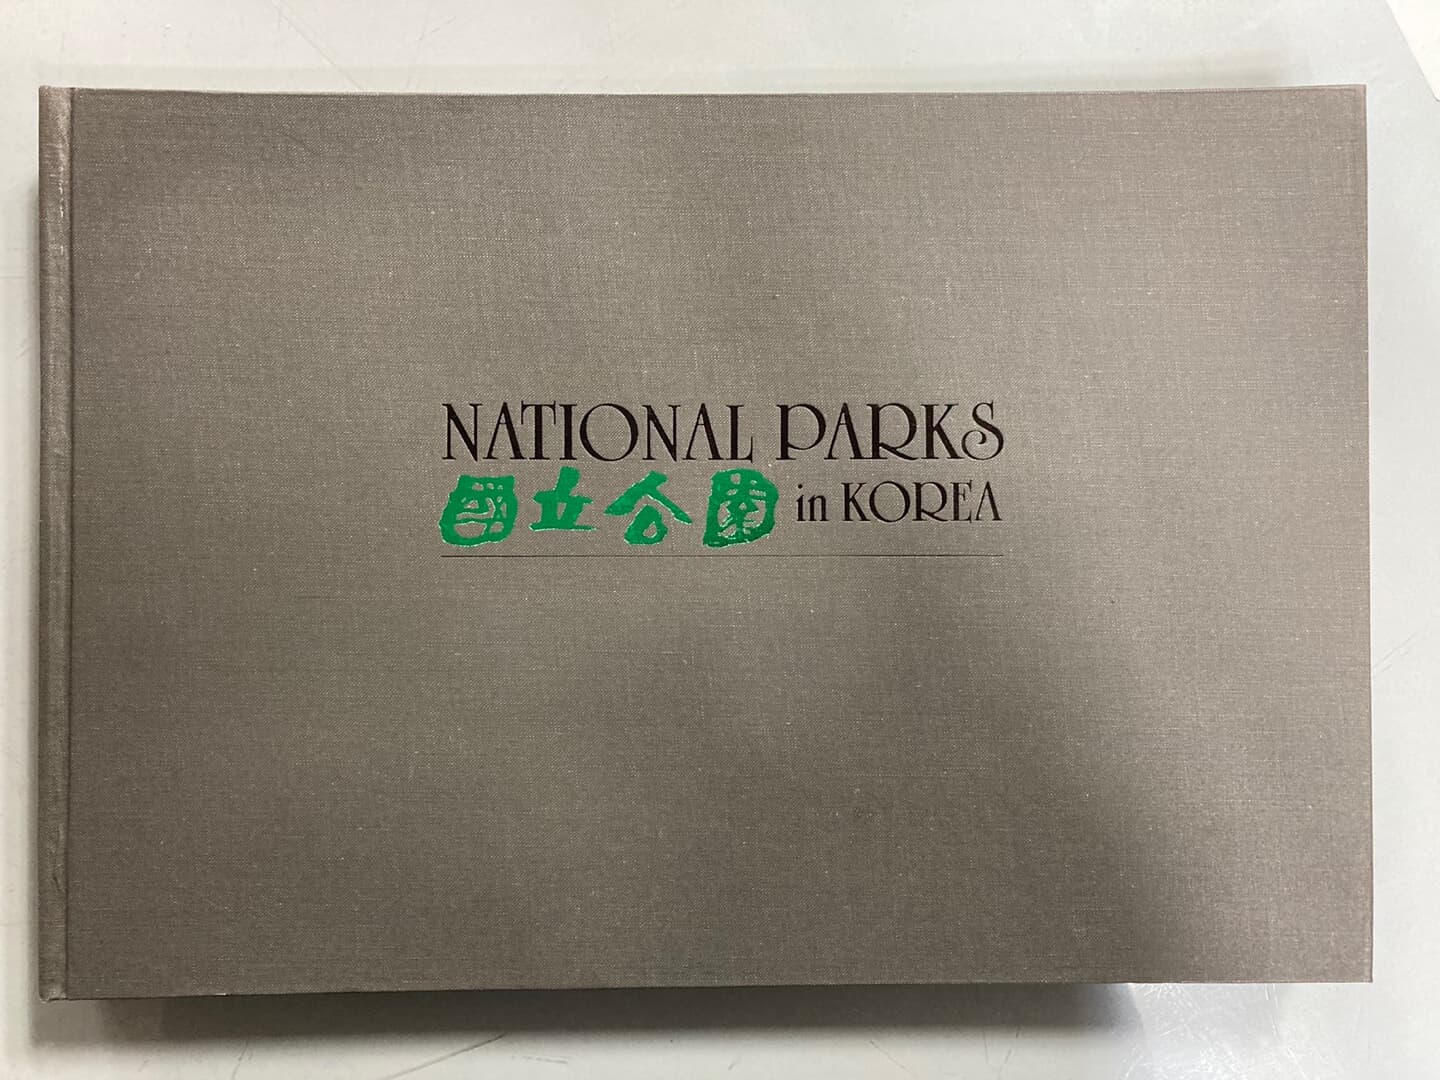 국립공원 - NATIONAL PARKS in KOREA